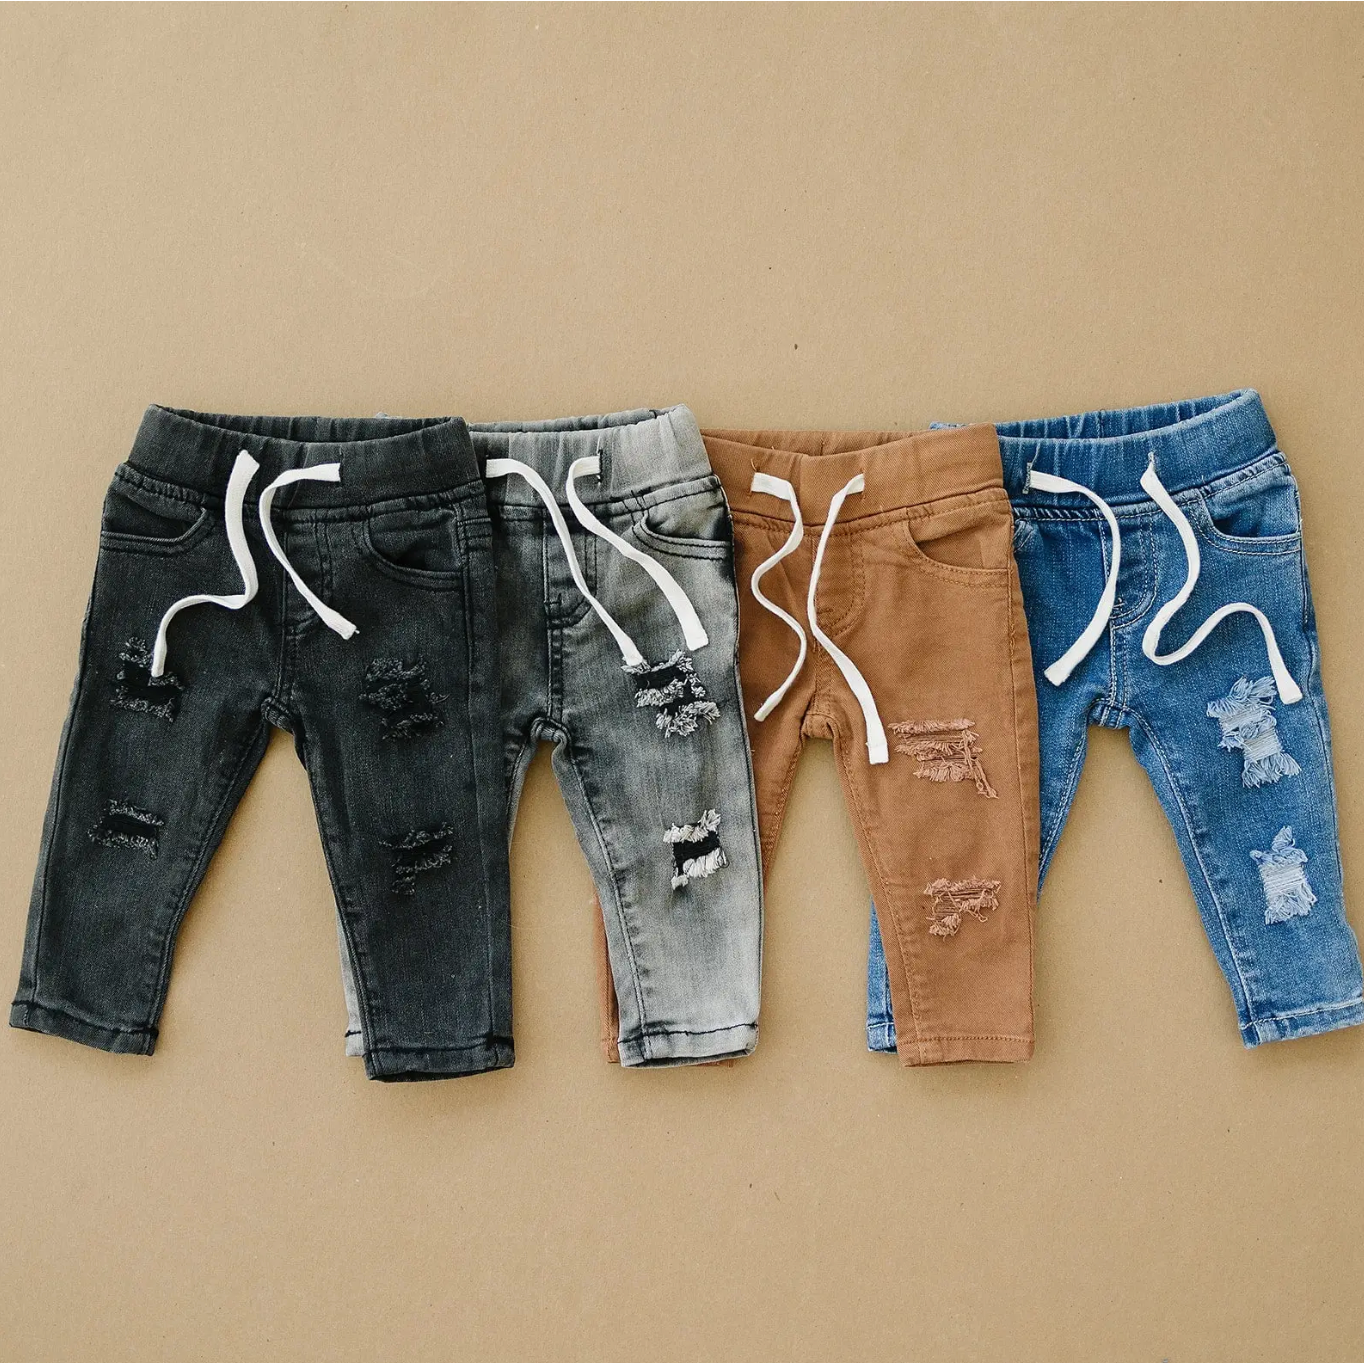 ashton jeans in khaki